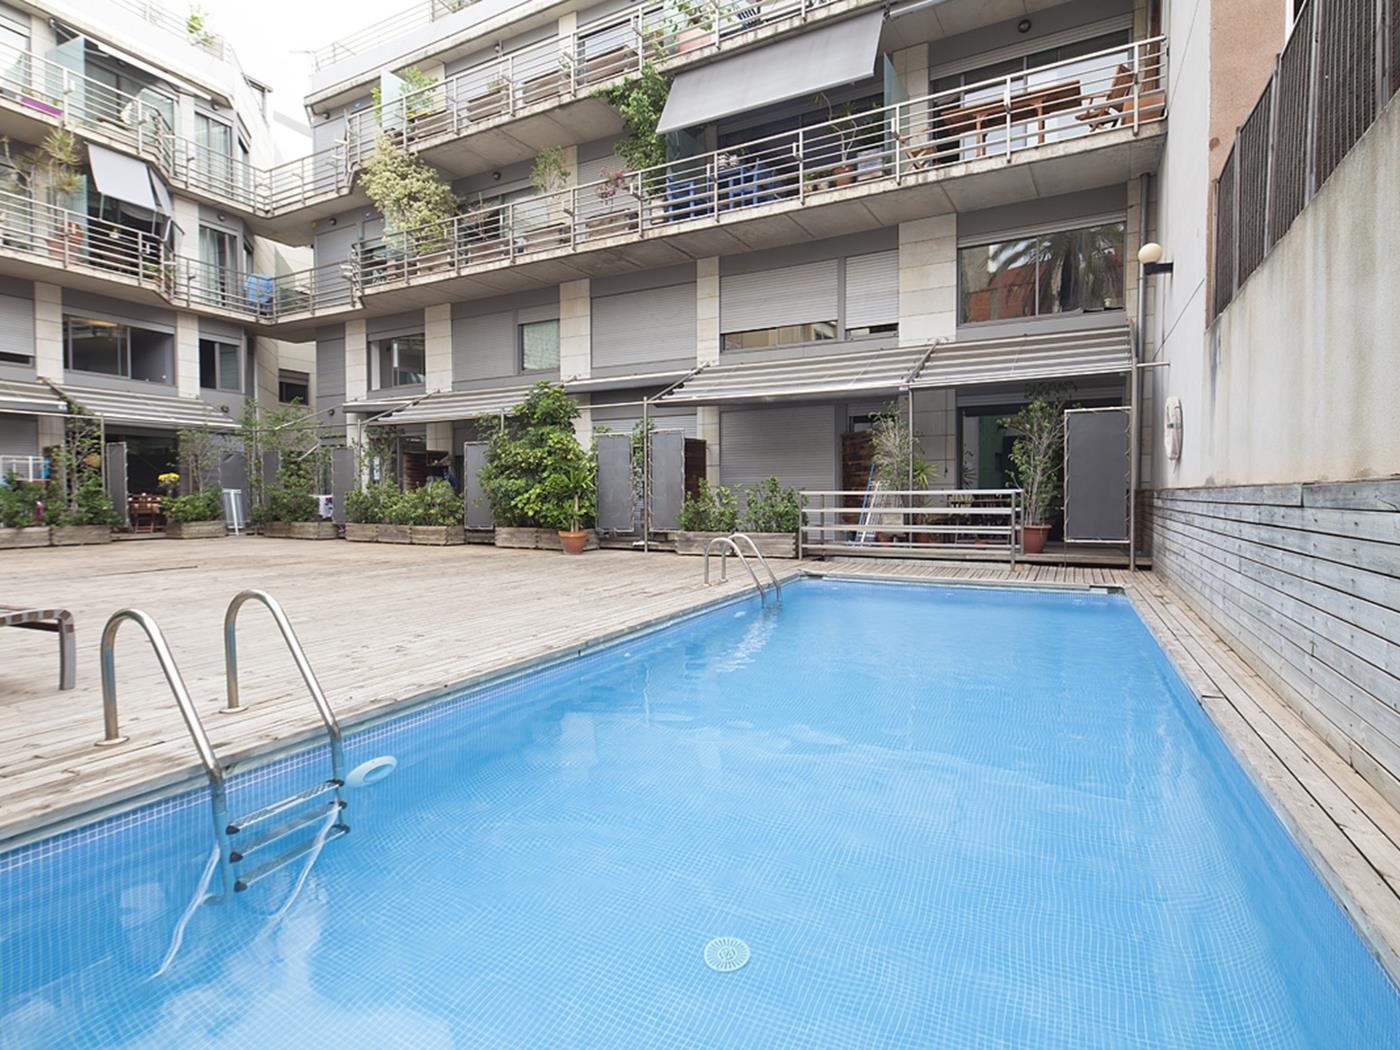 Duplex con piscina a Barcellona per 8 - My Space Barcelona Appartamenti